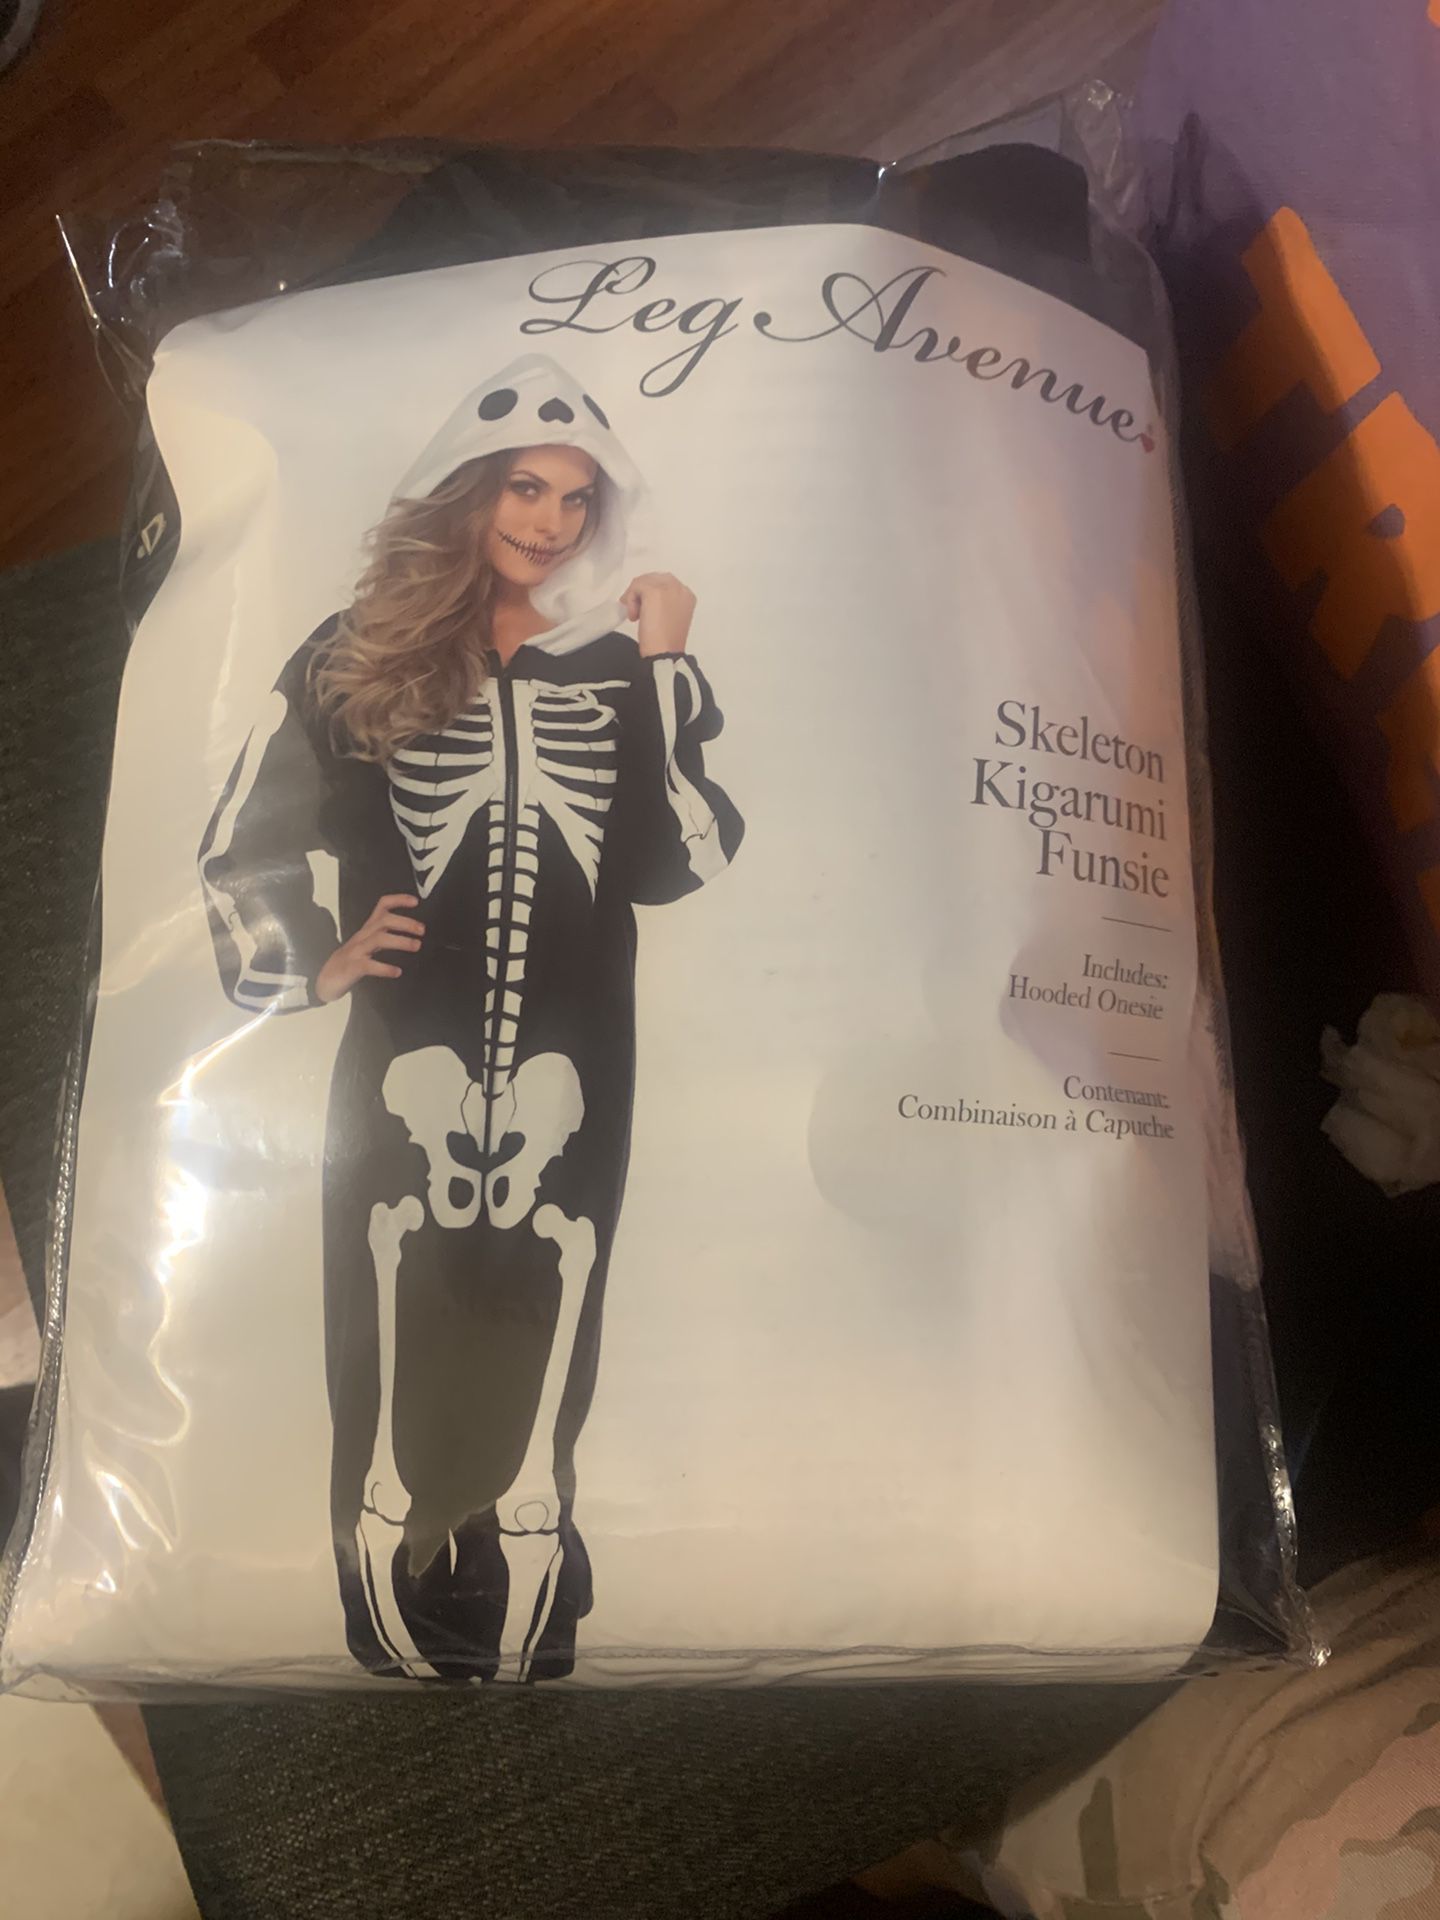 New skeleton kigarumi